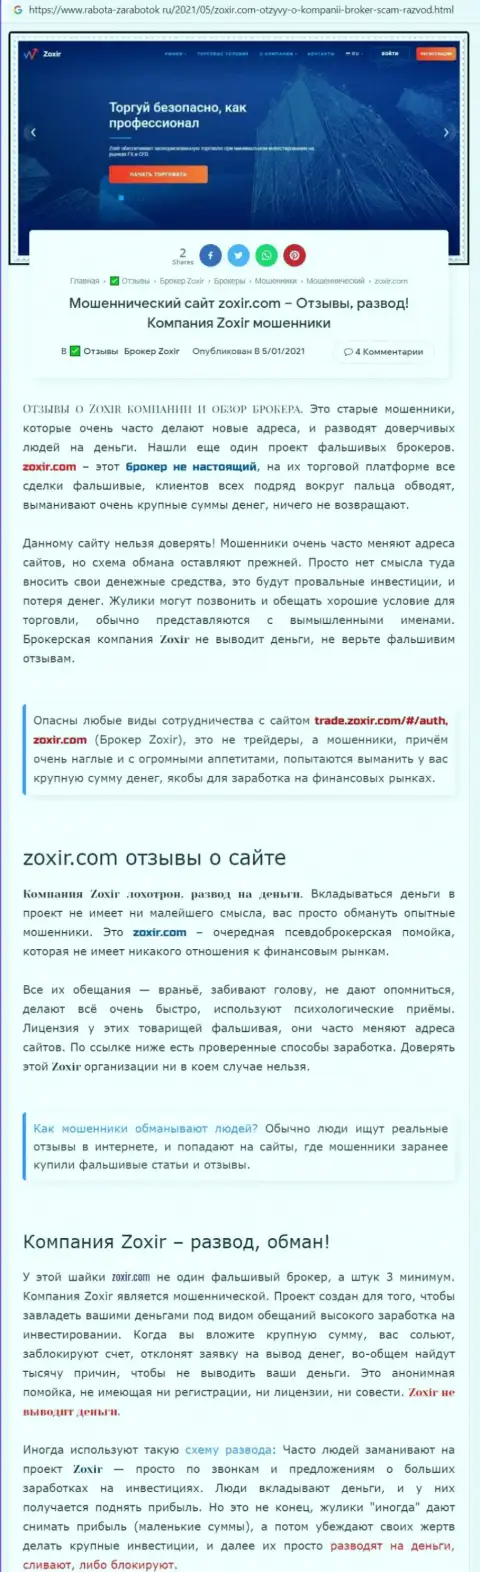 Автор статьи советует не вкладывать средства в лохотрон Zoxir - ПОХИТЯТ !!!